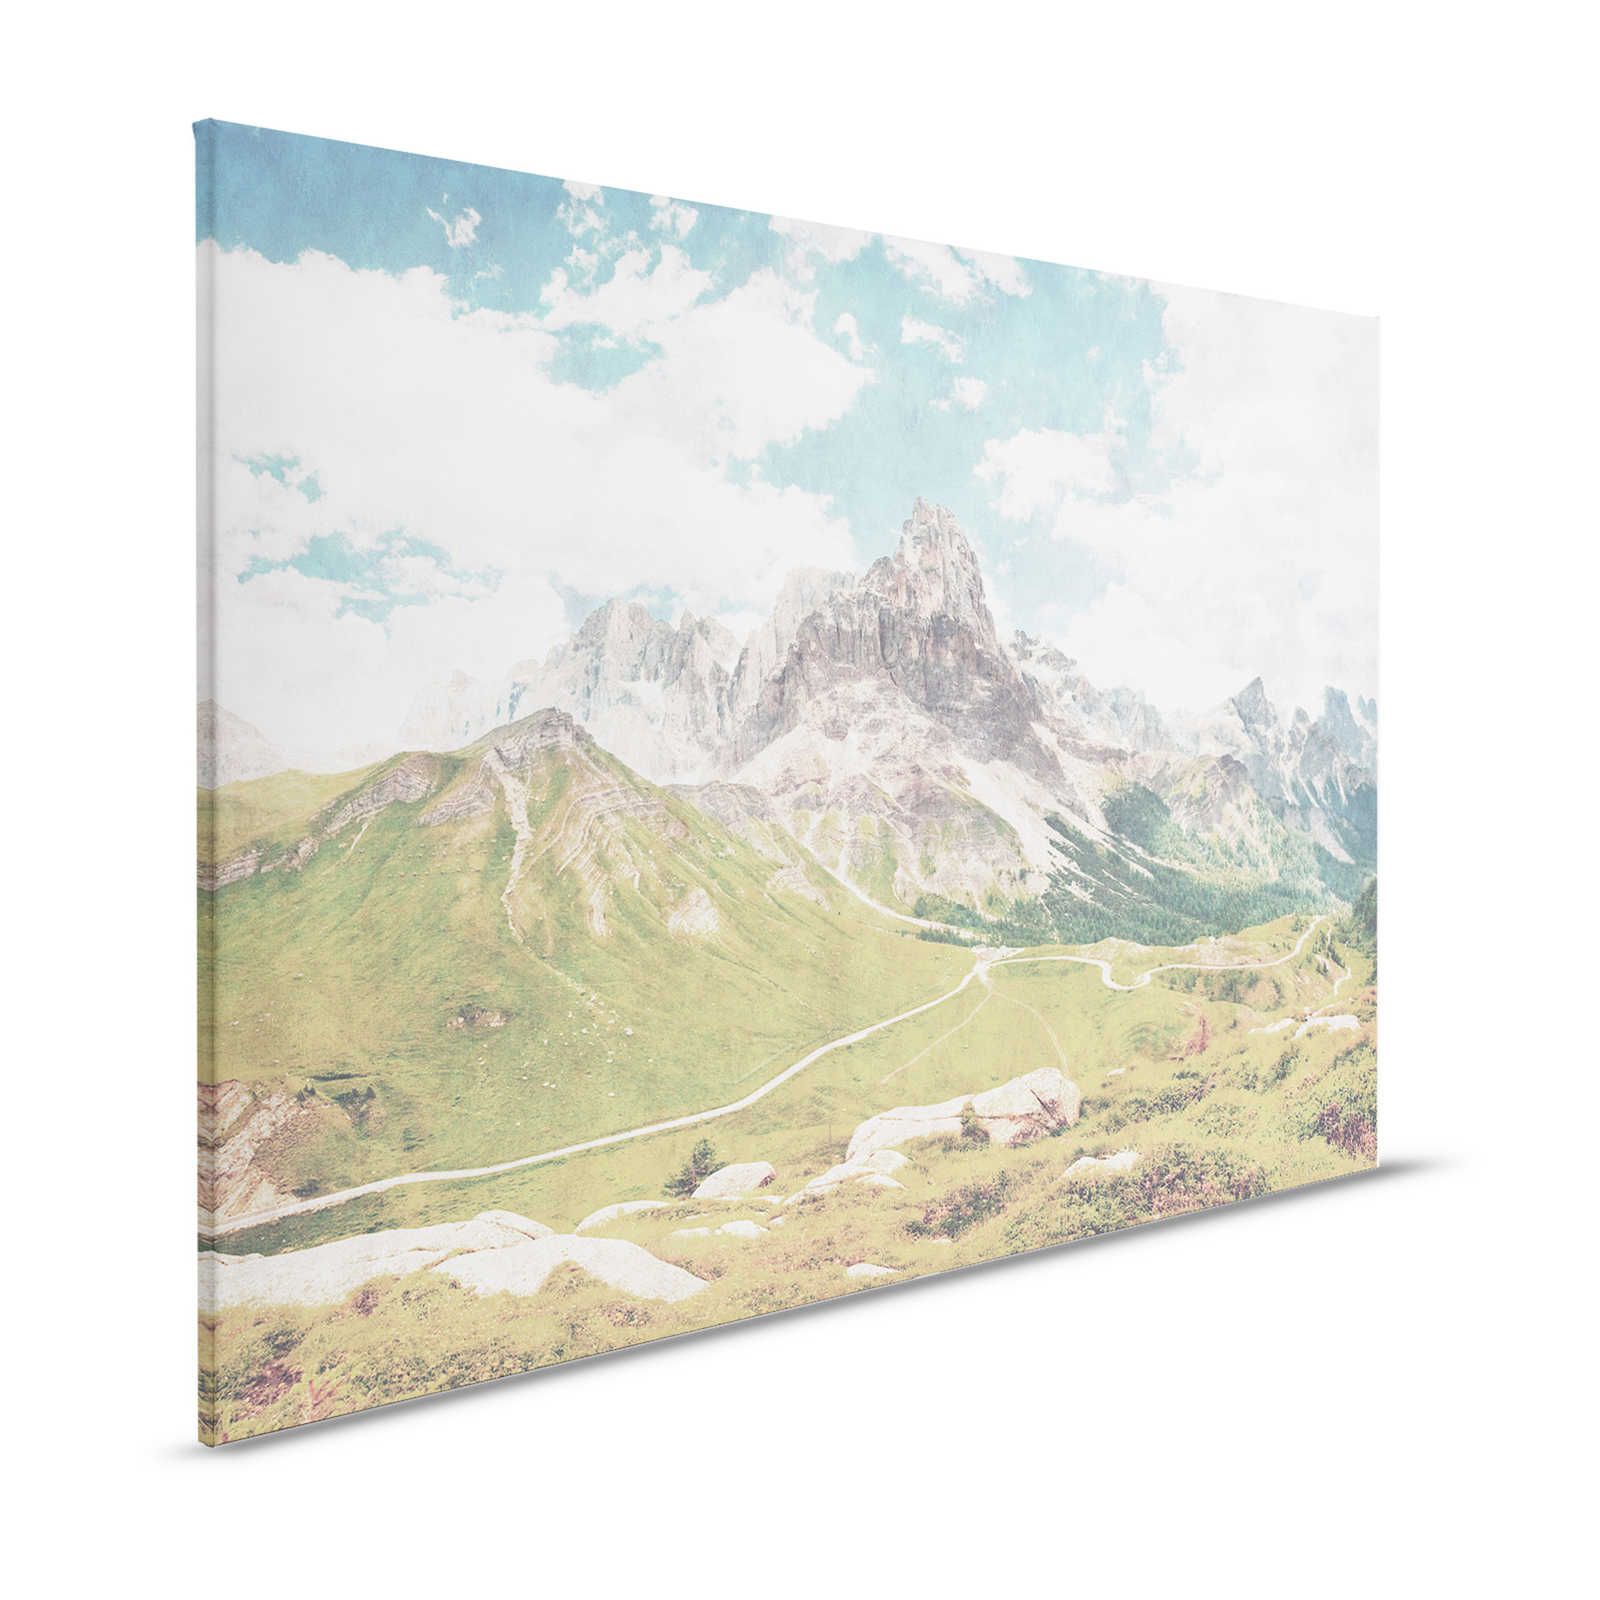 Dolomiti 2 - Toile Dolomites Rétro Photographie - 1,20 m x 0,80 m
